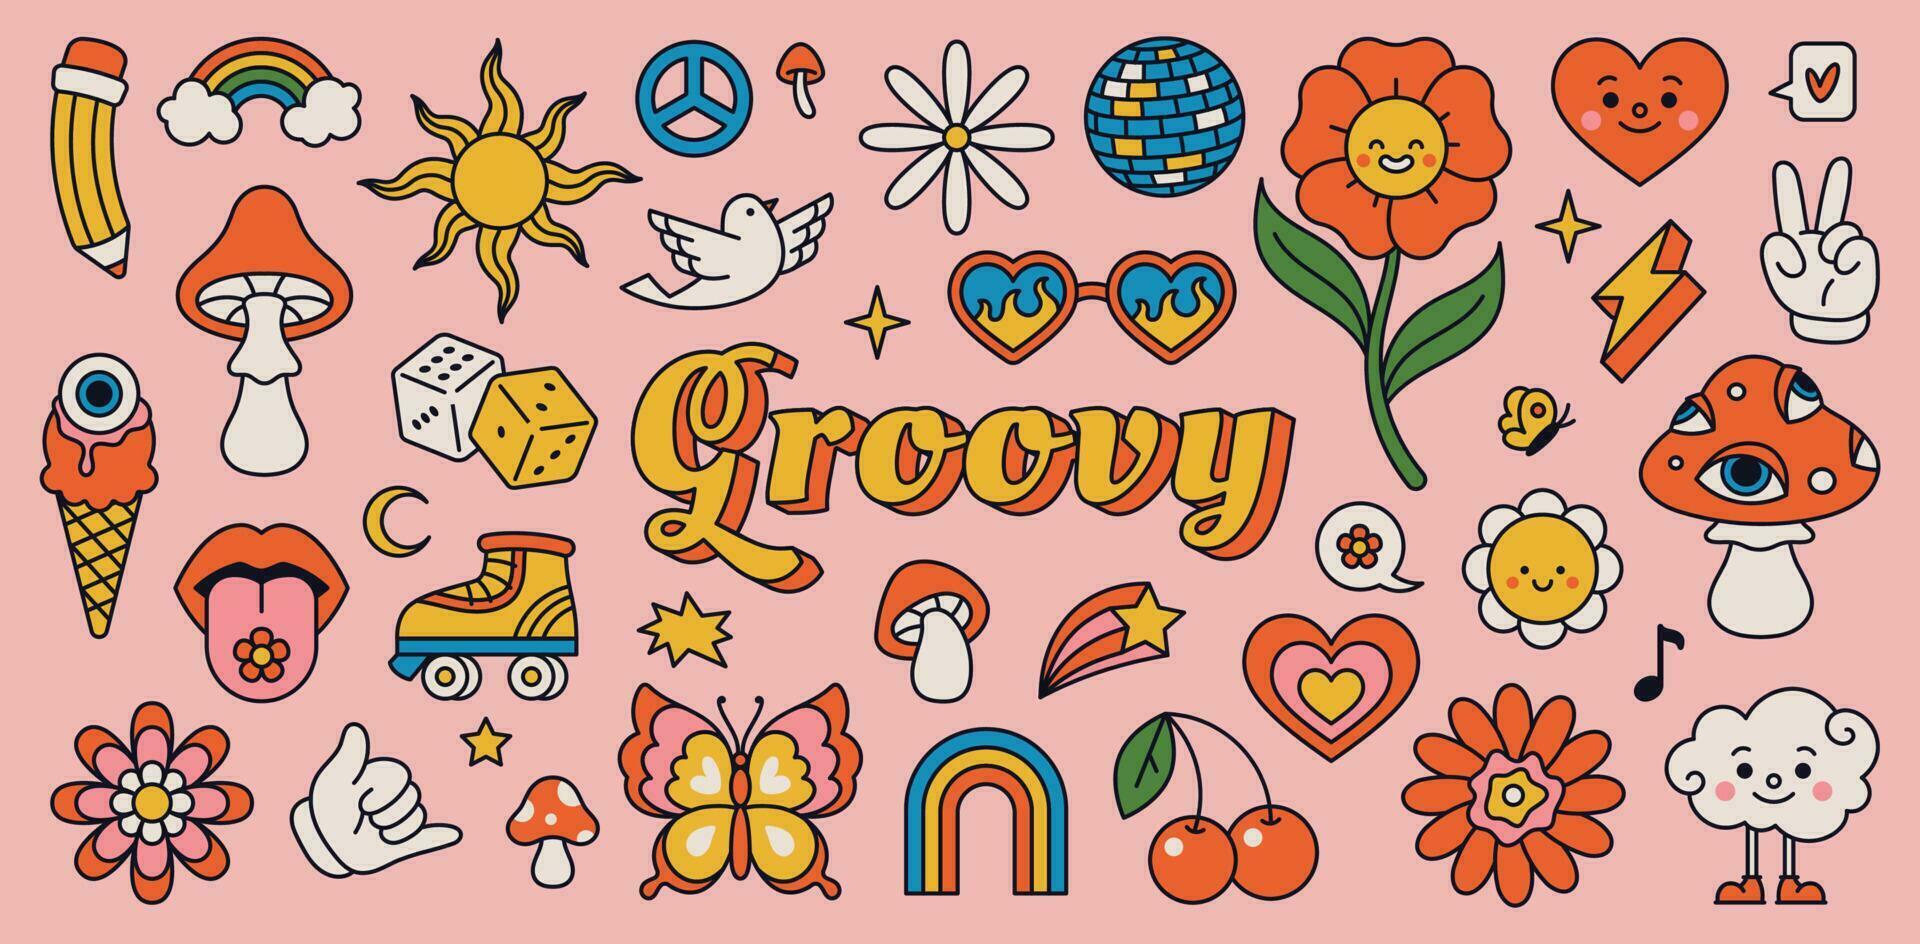 retro 70s hippie klistermärken, psychedelic häftig element. tecknad serie skraj svamp, blommor, regnbåge, årgång hippie stil element vektor uppsättning